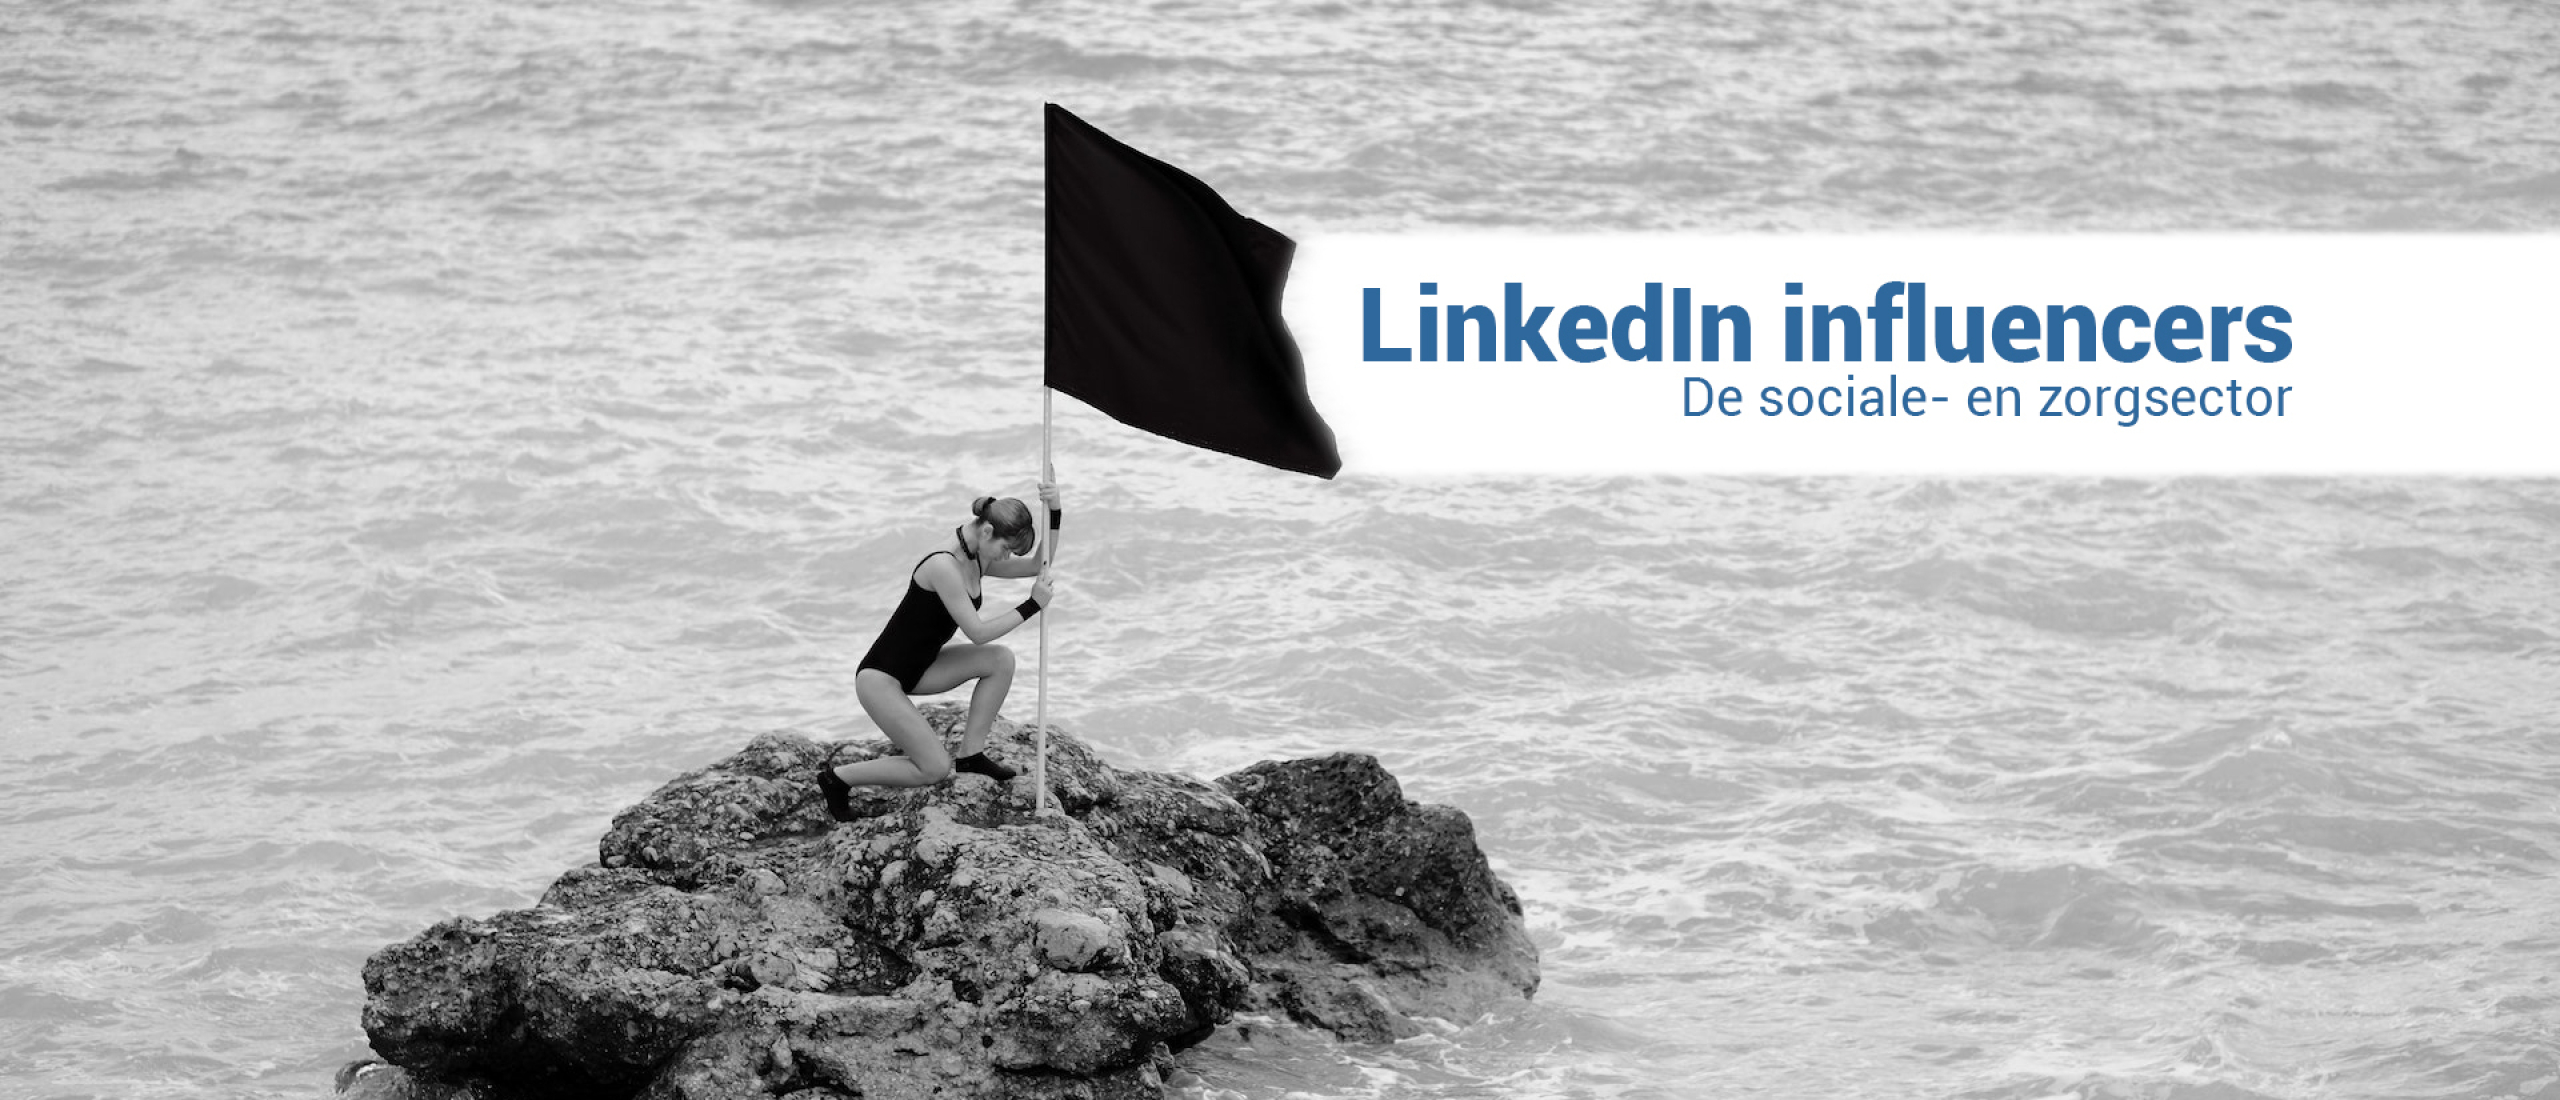 LinkedIn Influencers in de sociale- en zorgsector